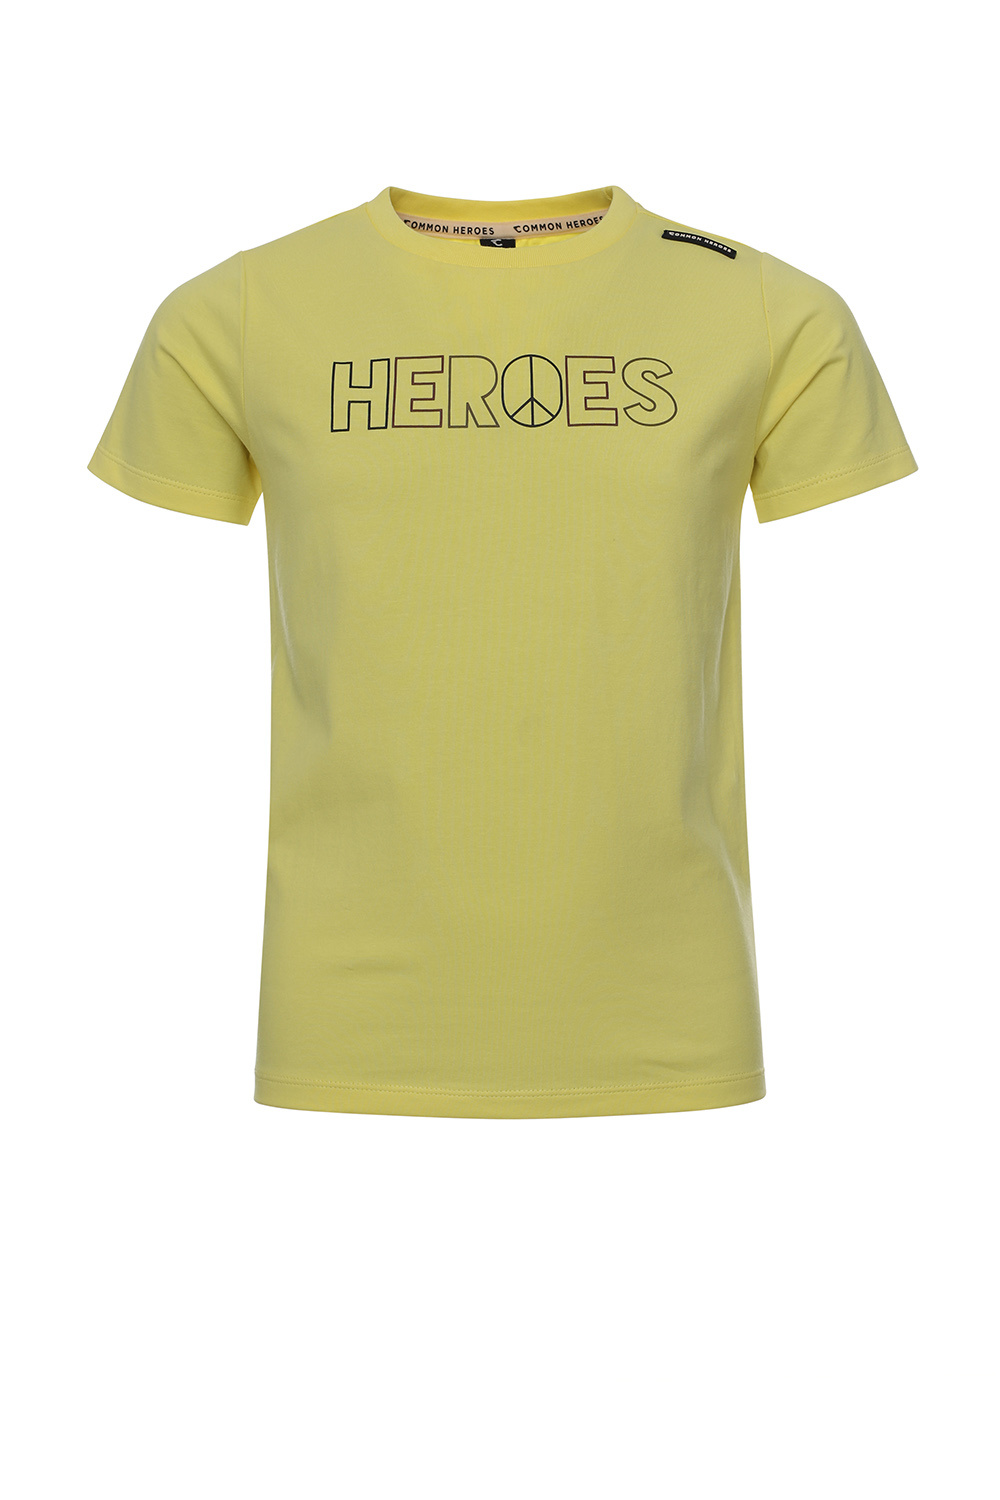 Common Heroes 2311-8416-500 Jongens Shirt - Maat 98/104 - Geel vanKatoen